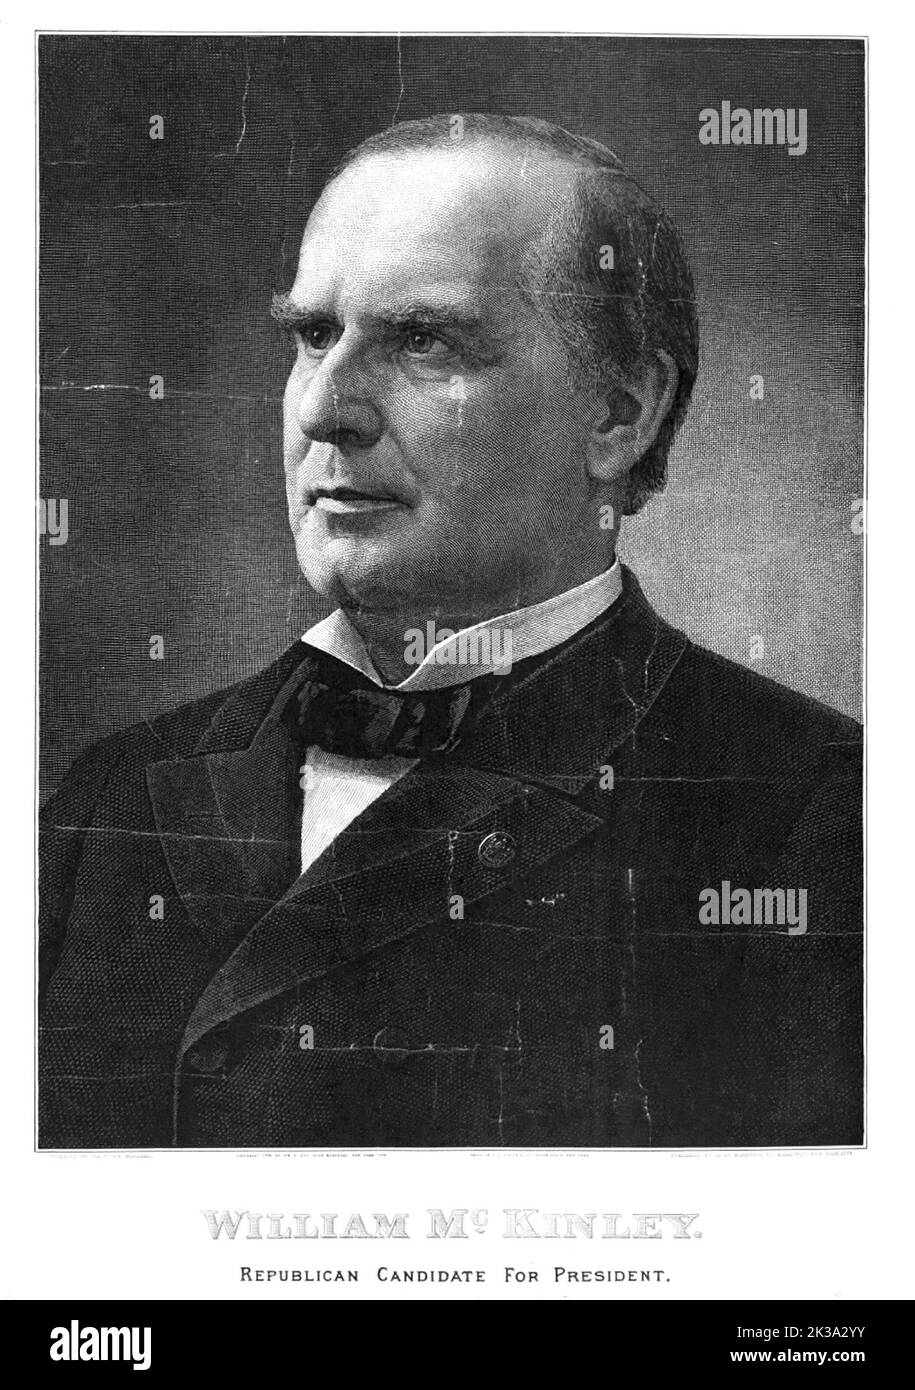 Ein Porträt des US-Präsidenten William McKinley. McKinley war 25. der Präsident der USA und der dritte von vier, die ermordet wurden. Er wurde am 6.. September 1901 von Leon Czolgosz angeschossen. Wie James Garfield erholte sich McKinley kurz von den Wunden, um einige Zeit später an einer Sepsis zu sterben. In diesem Stich wird er als Präsidentschaftskandidat gesehen. Stockfoto